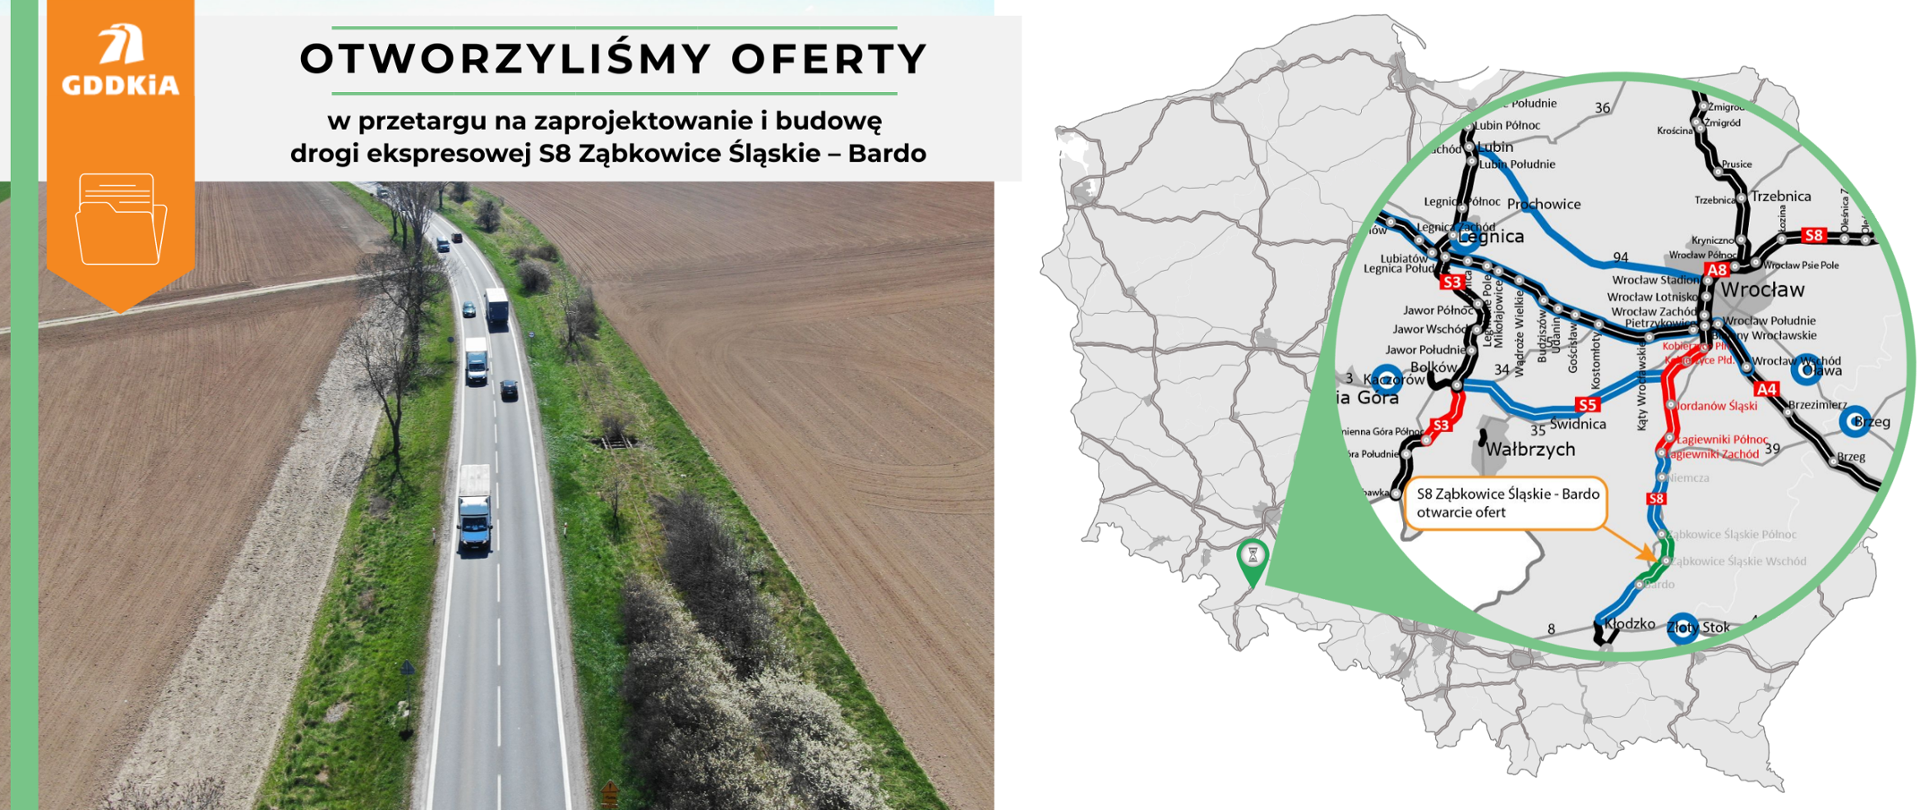 Infografika informująca o otwarciu ofert na realizację drogi ekspresowej S8 na odcinku Ząbkowice Śląskie - Bardo. Po prawej mapa Polski z zaznaczonym odcinkiem S8 Ząbkowice Śląskie - Bardo. Po lewej zdjęcie obecnej drogi krajowej nr 8 na tym odcinku. Jednojezdniowa droga po jednym pasie ruchu w obu kierunkach. Widać poruszające się po drodze pojazdy. Po obu stronach pola uprawne.